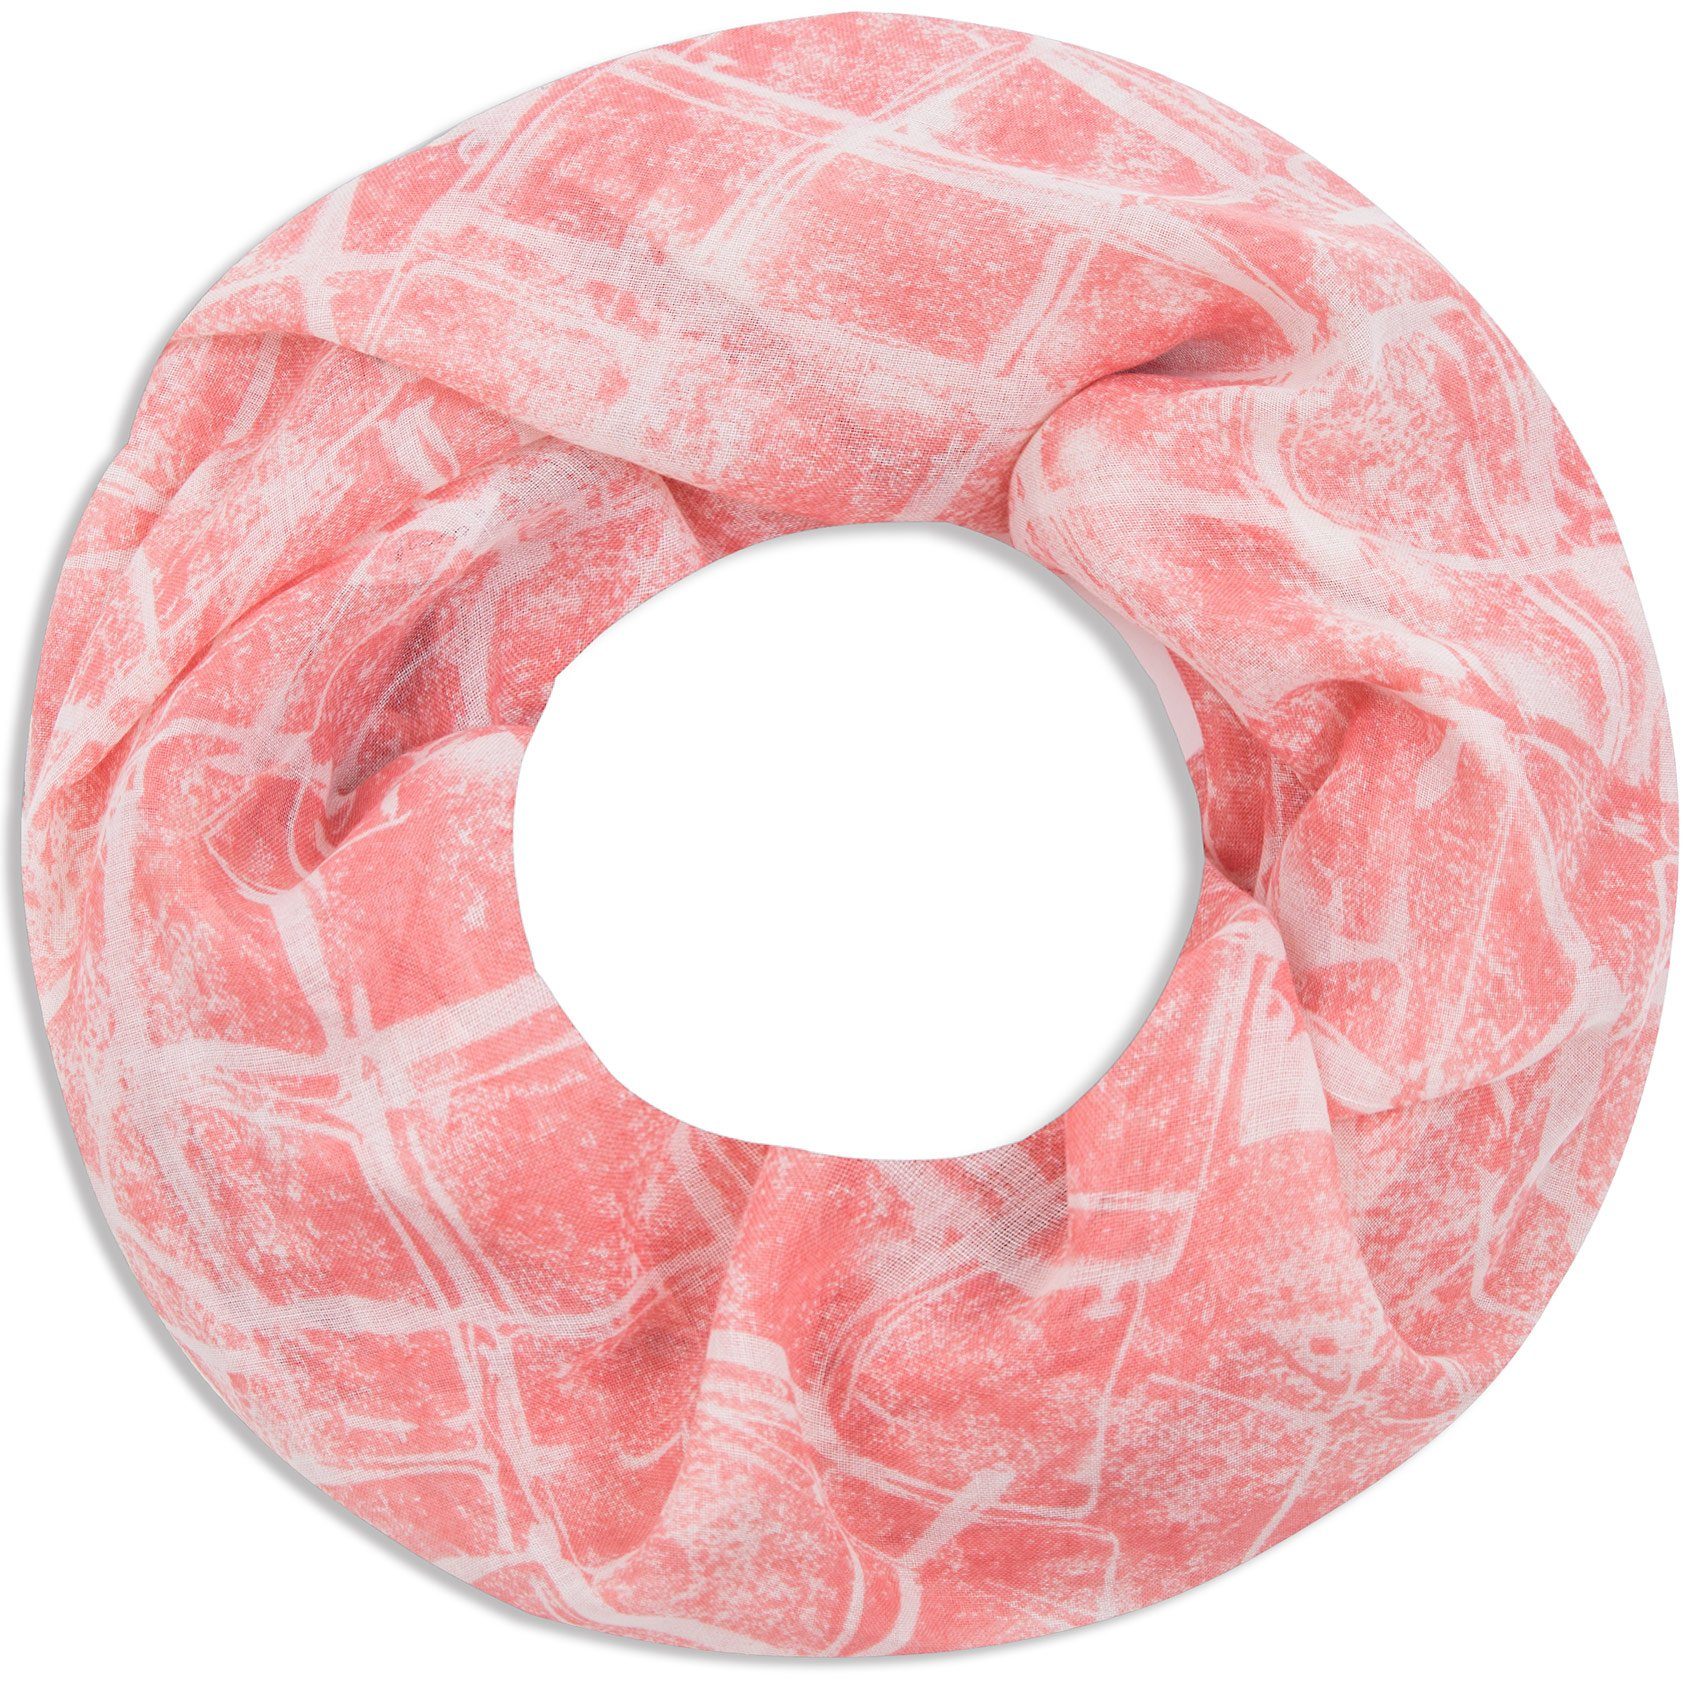 Faera Loop, Damen Schal marmorierter weicher und leichter Loopschal Rundschal rosa